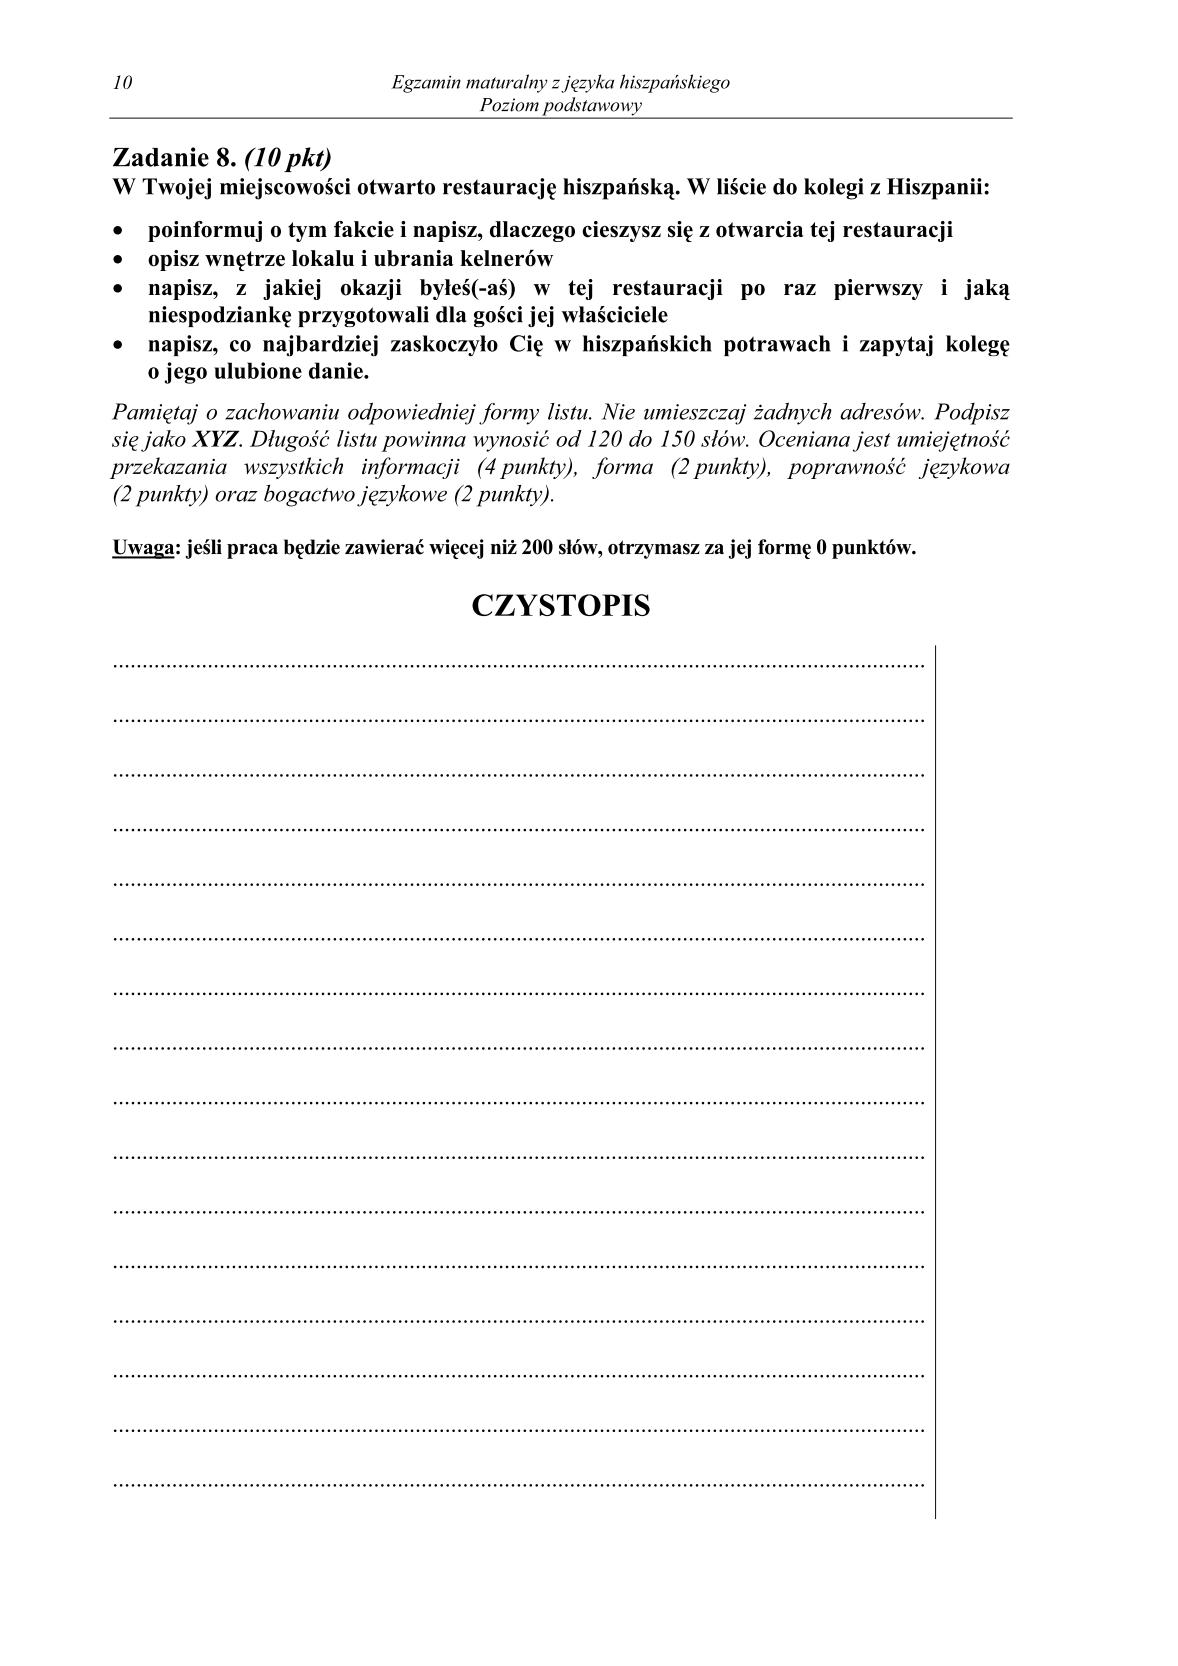 pytania-hiszpanski-poziom-podstawowy-matura-2014-str.10